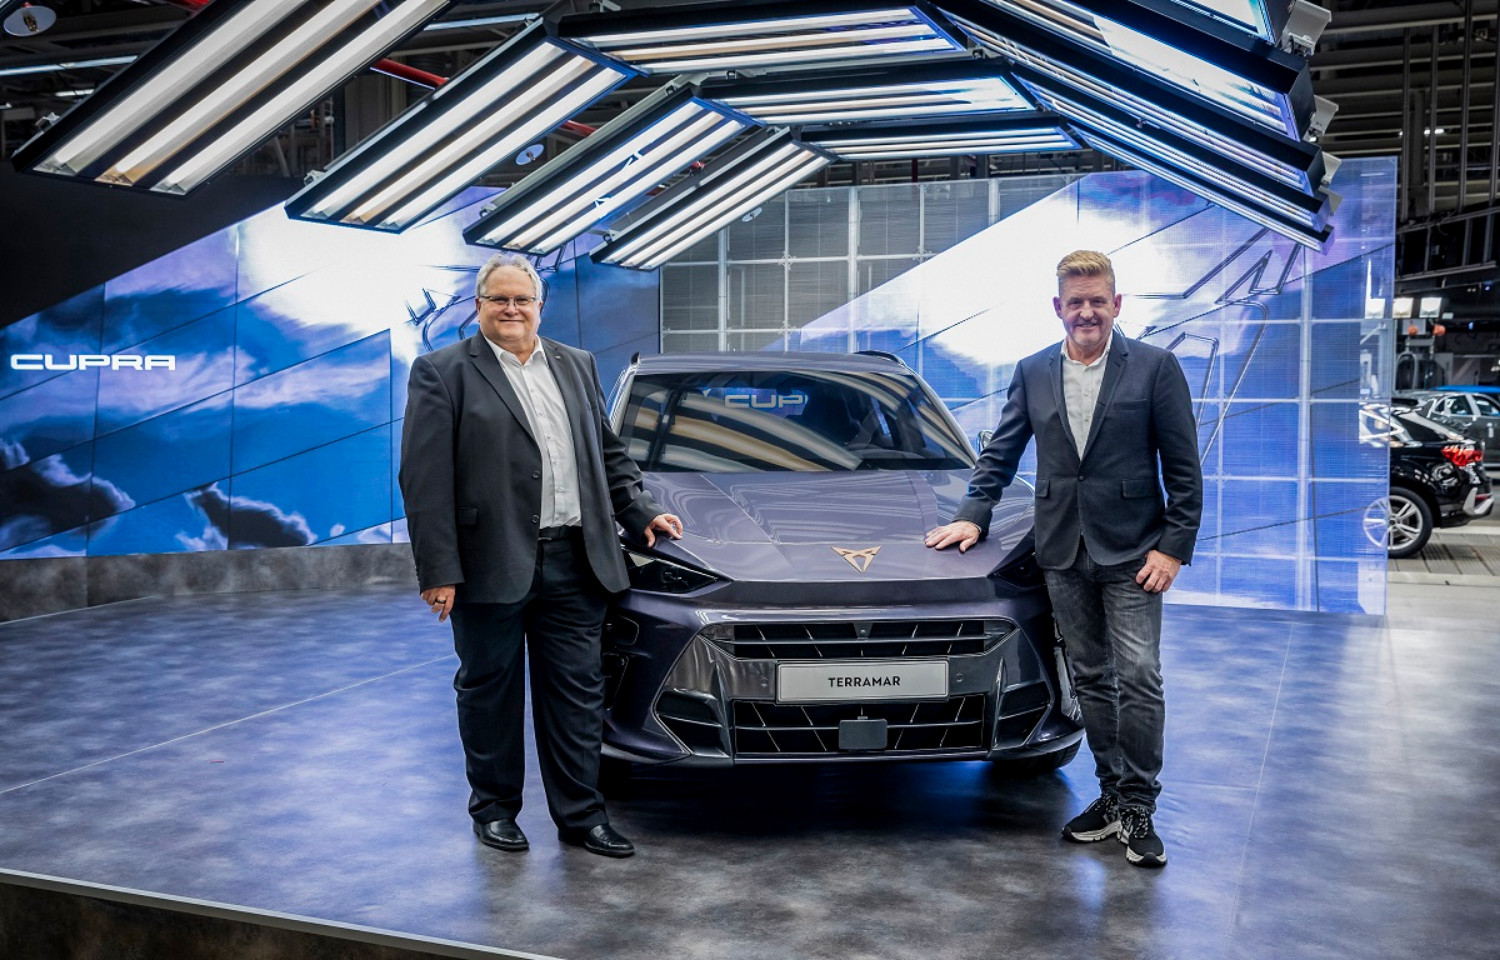 O Cupra Terramar, ladeado, à esquerda, por Alfons Dintner, CEO da Audi Hungria, e, à direita, por Wayne Griffiths, CEO da Cupra 